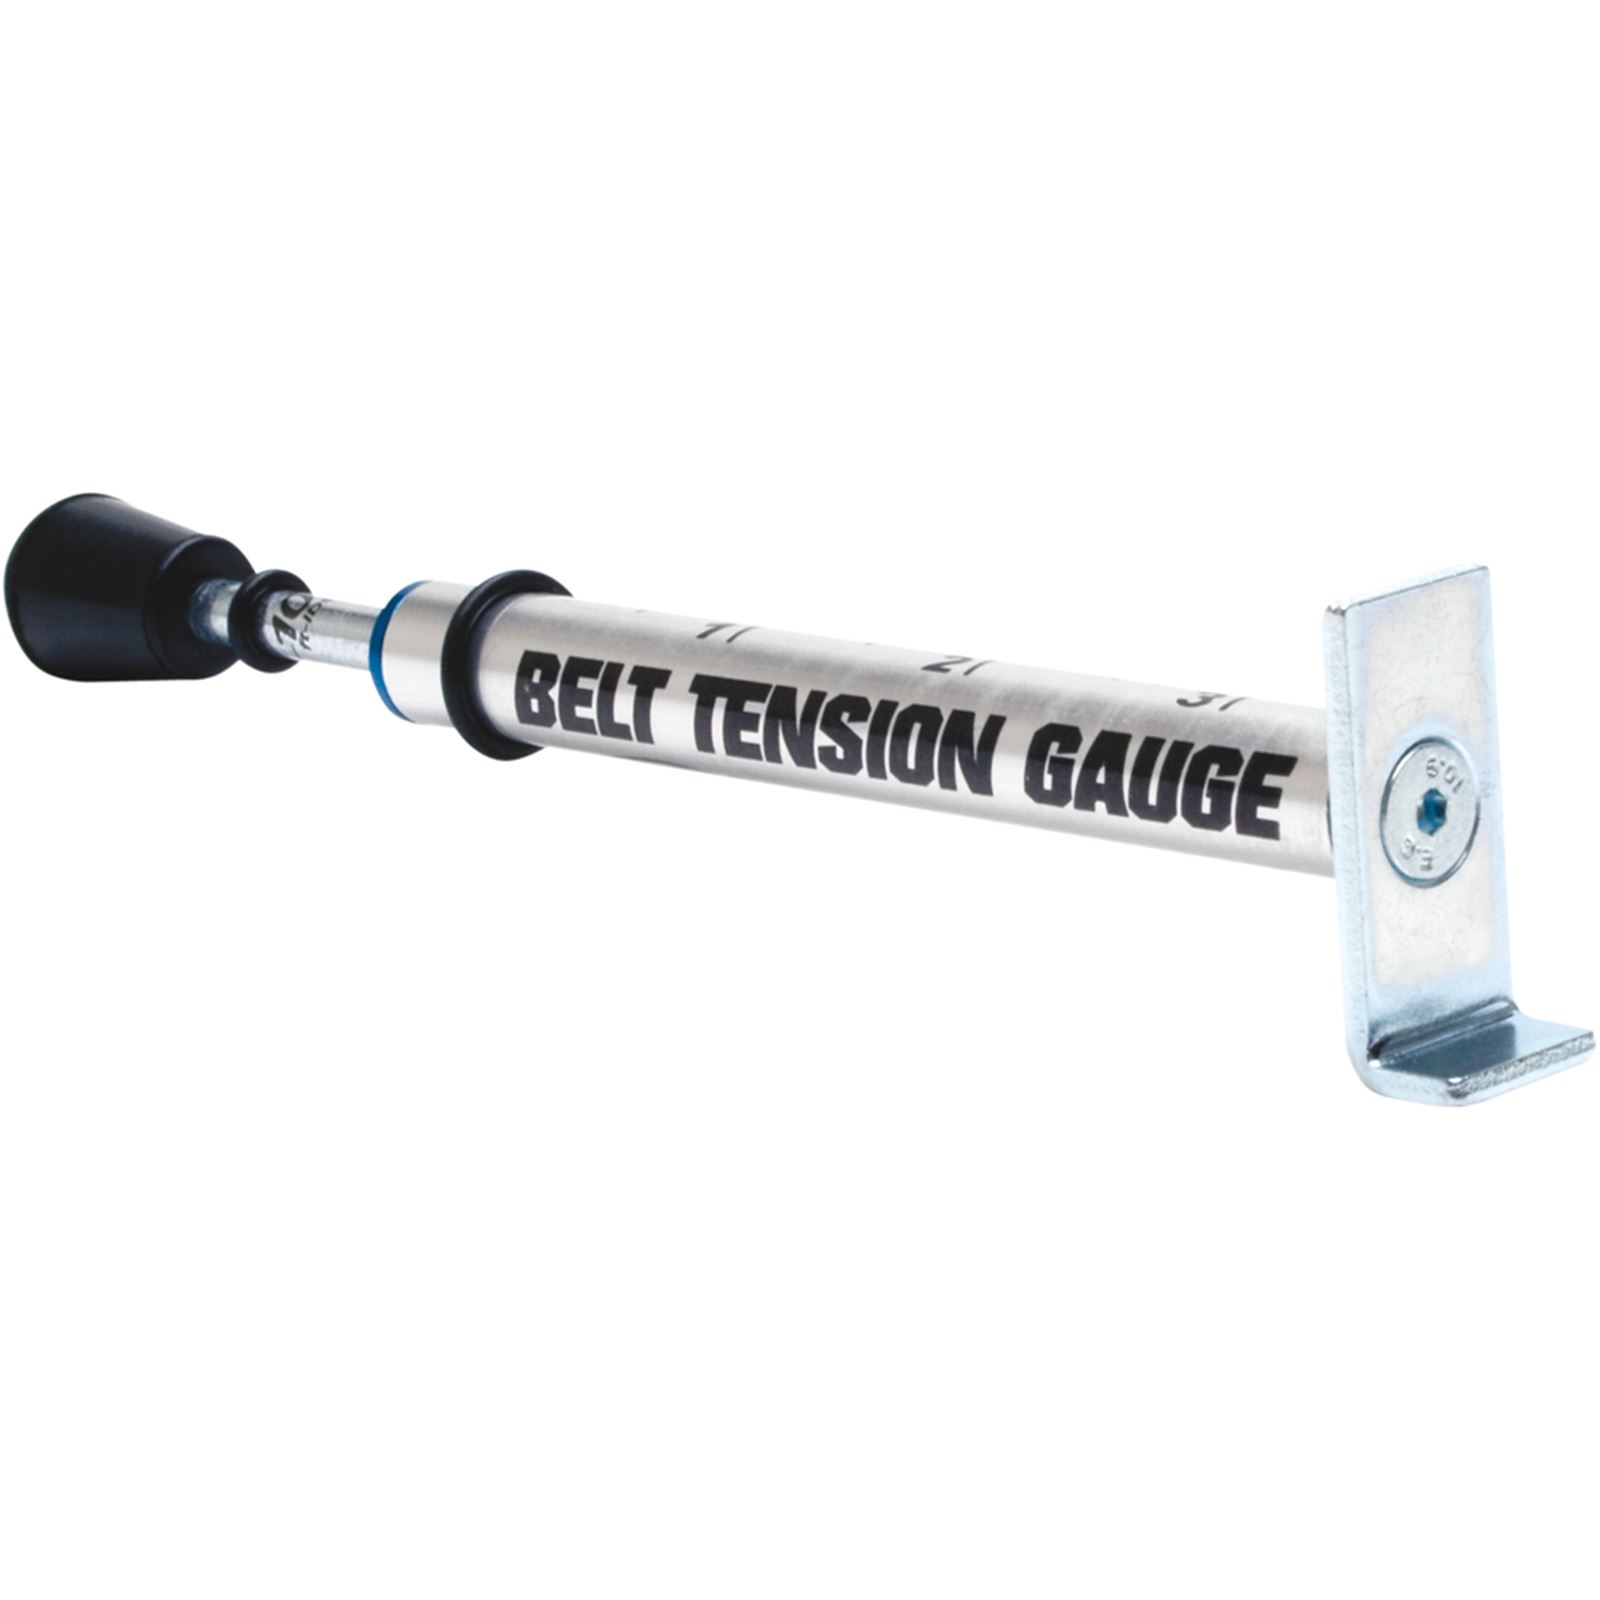 Motion Pro Belt Tension Gauge